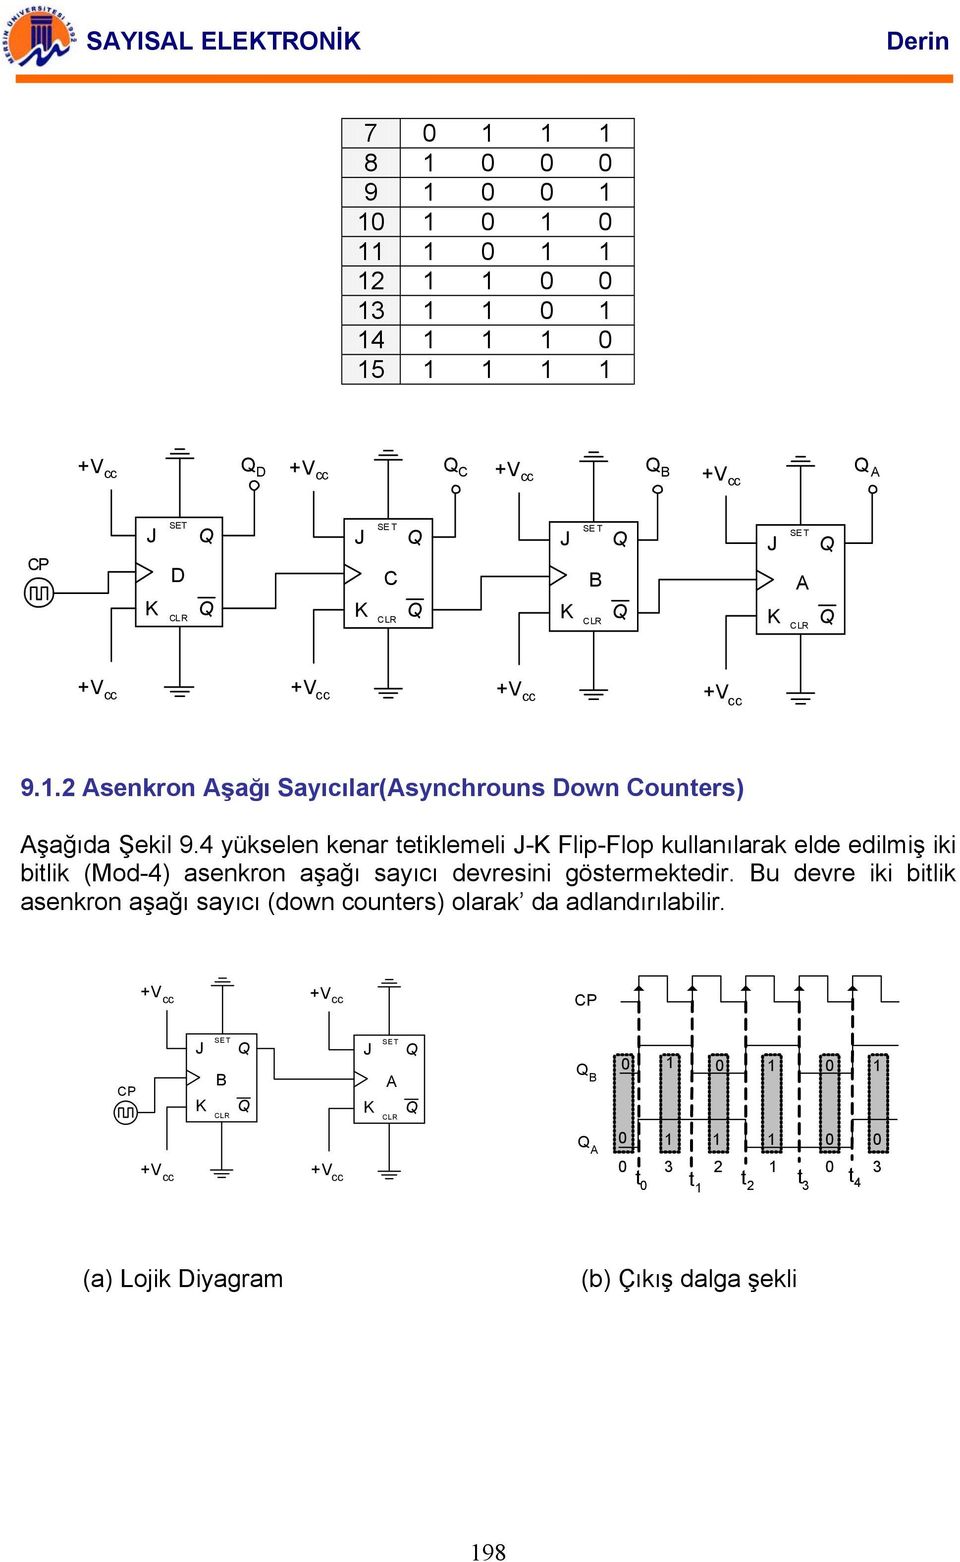 4 yükselen kenar tetiklemeli - Flip-Flop kullanılarak elde edilmiş iki bitlik (Mod-4) asenkron